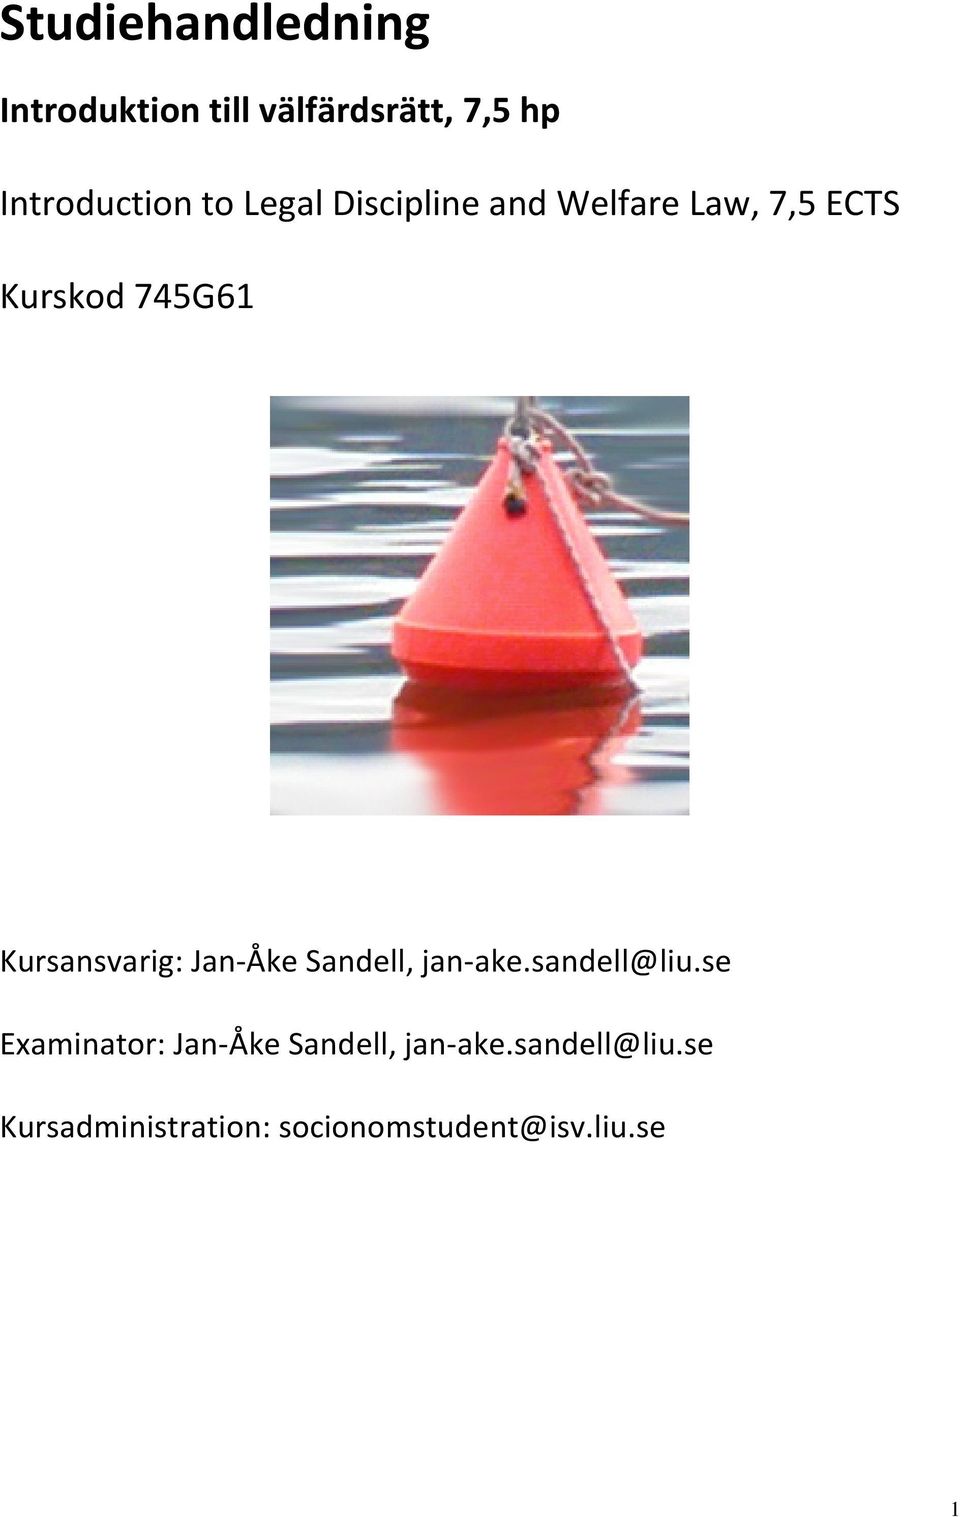 Kursansvarig: Jan-Åke Sandell, jan-ake.sandell@liu.